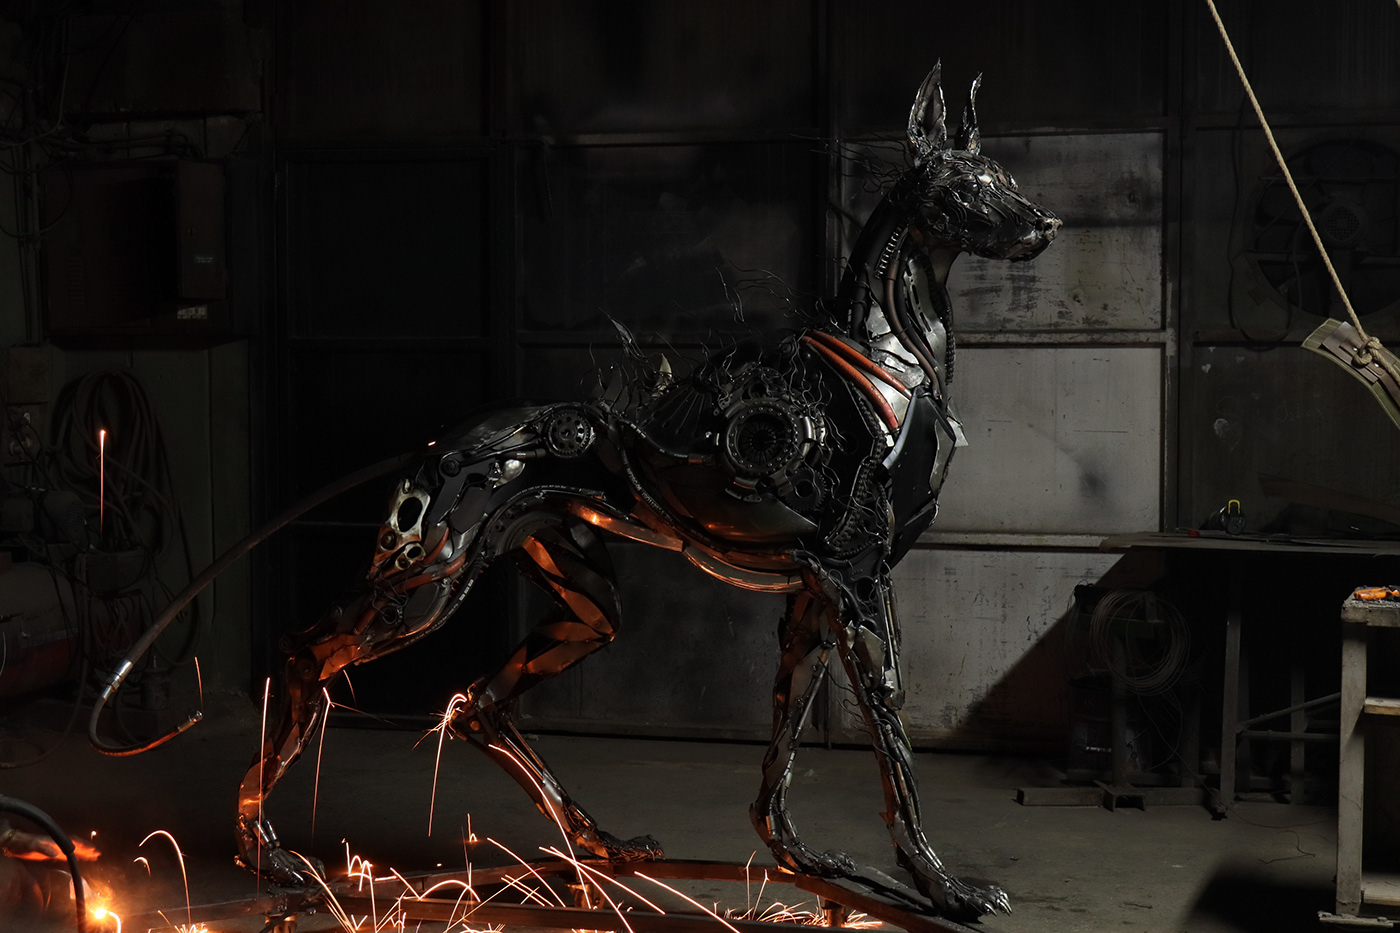 metalsculpture sculpture weldart art Cyberpunk cyberpunkdog doberman Artista metalart ScrapArt